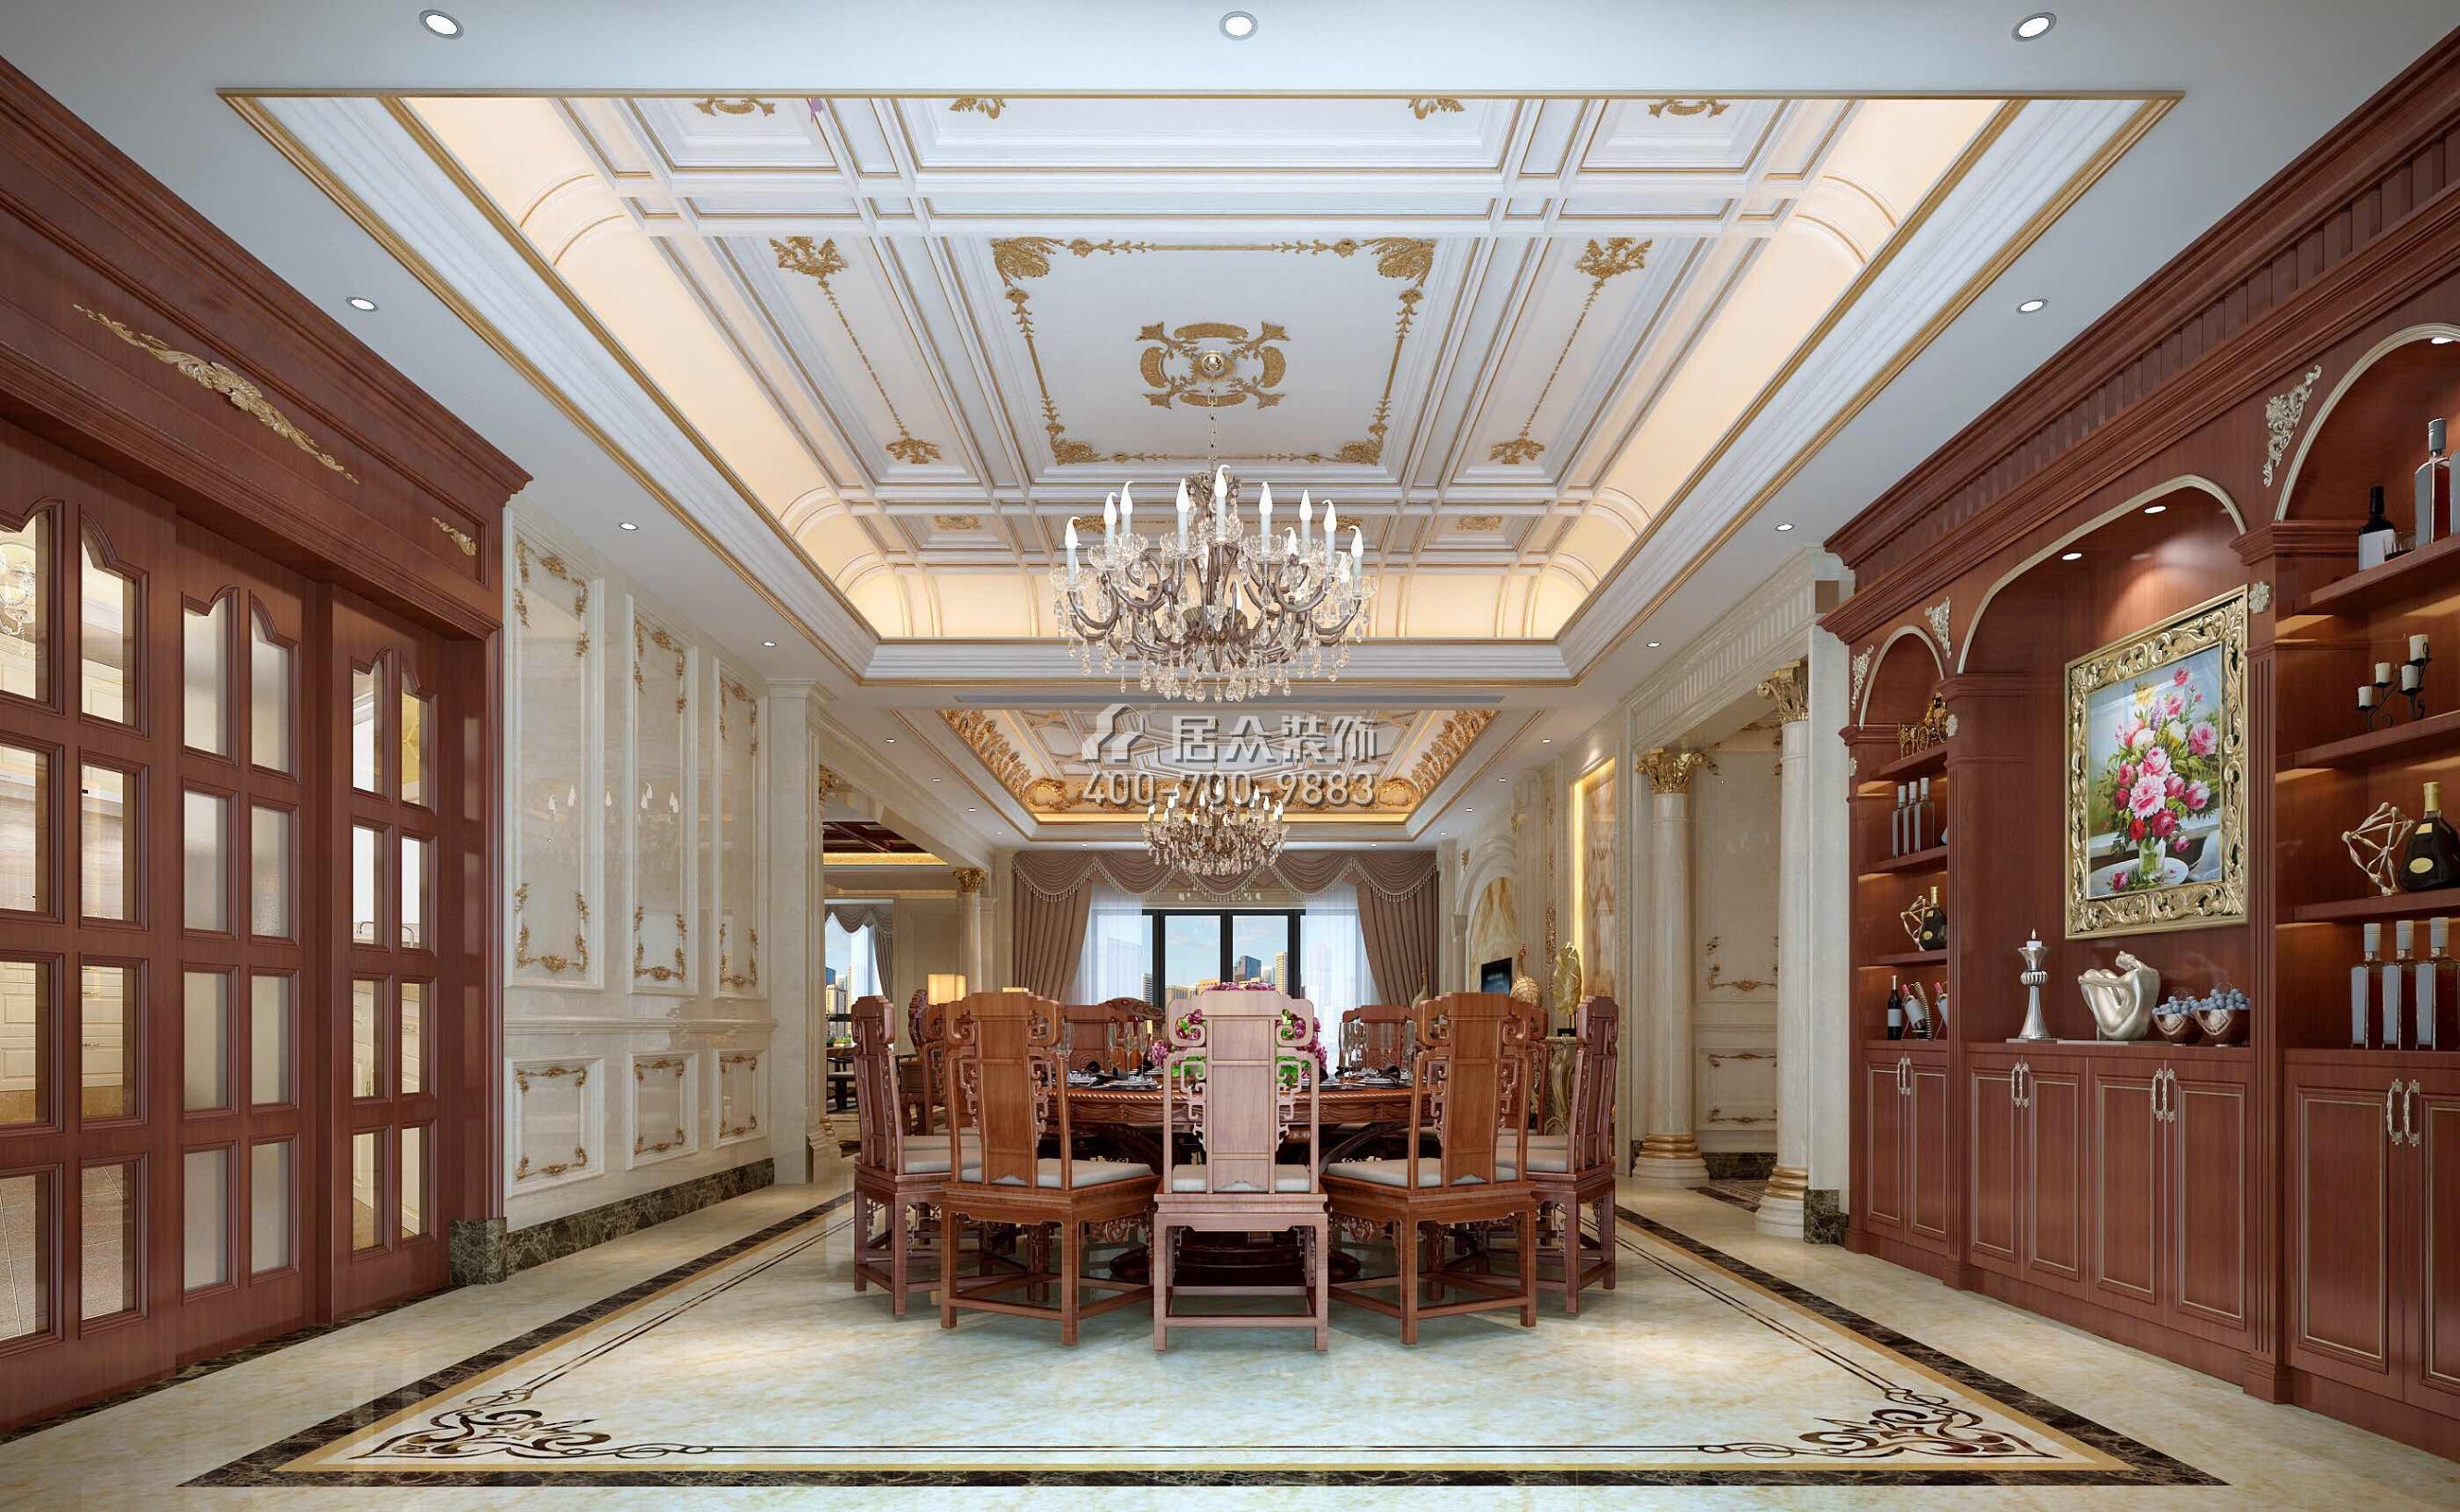 龙泉豪苑560平方米混搭风格平层户型餐厅装修效果图